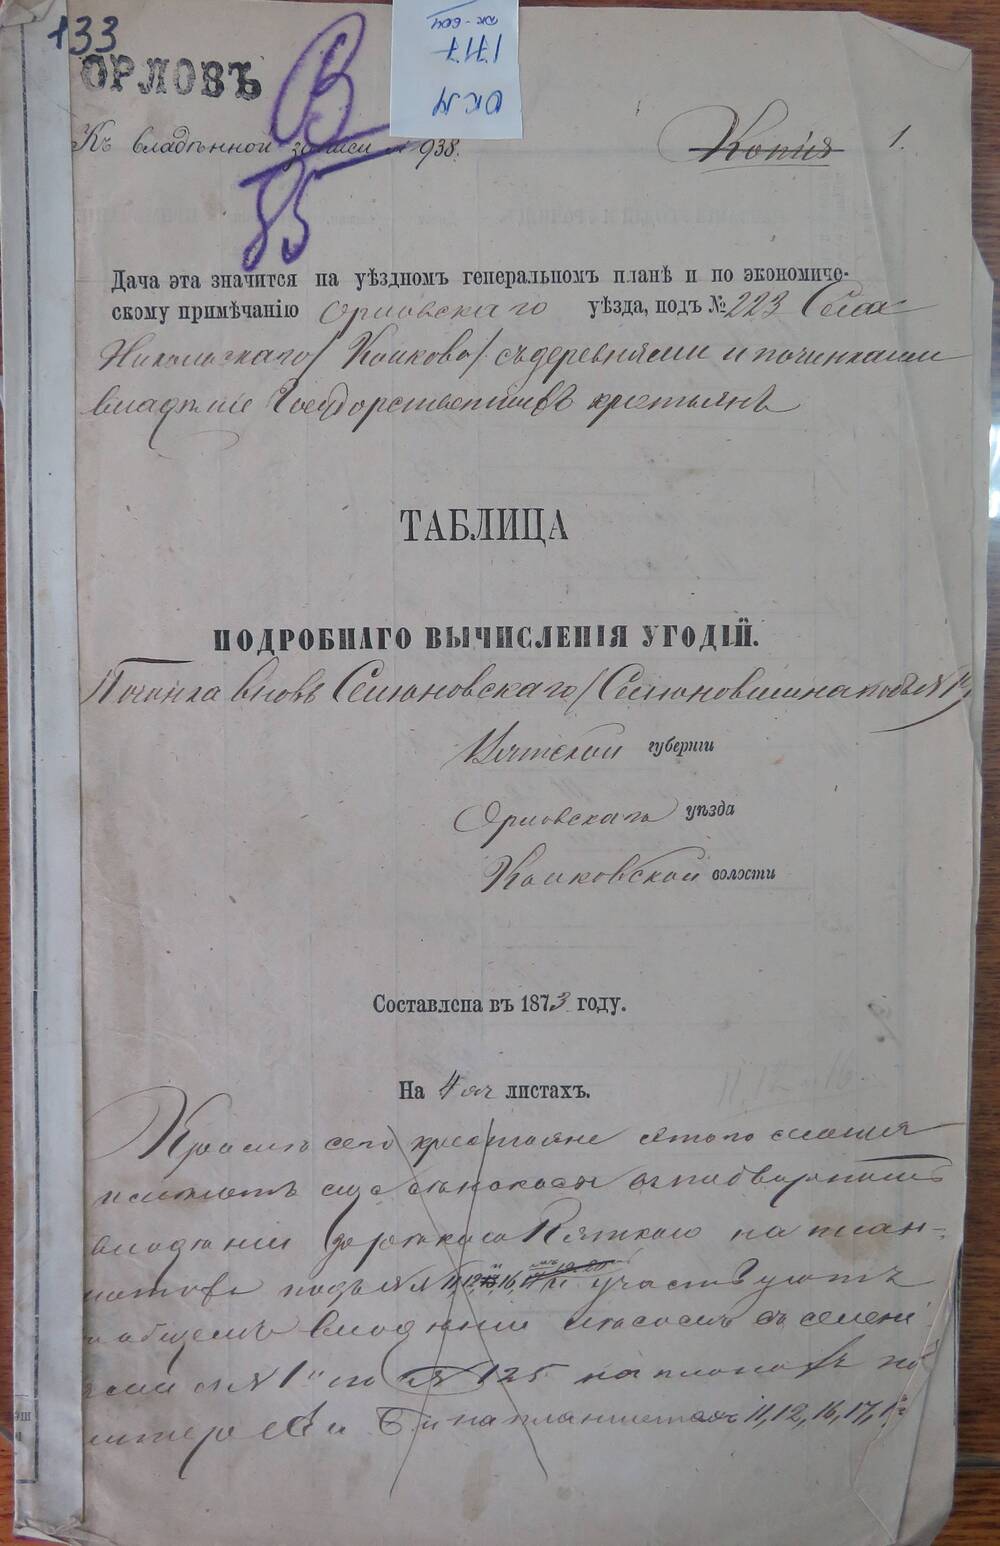 Таблица подробного вычисления угодий  к записи № 938 Вятской губернии, Орловского уезда, Колковской волости.
Составлена в 1873 году.